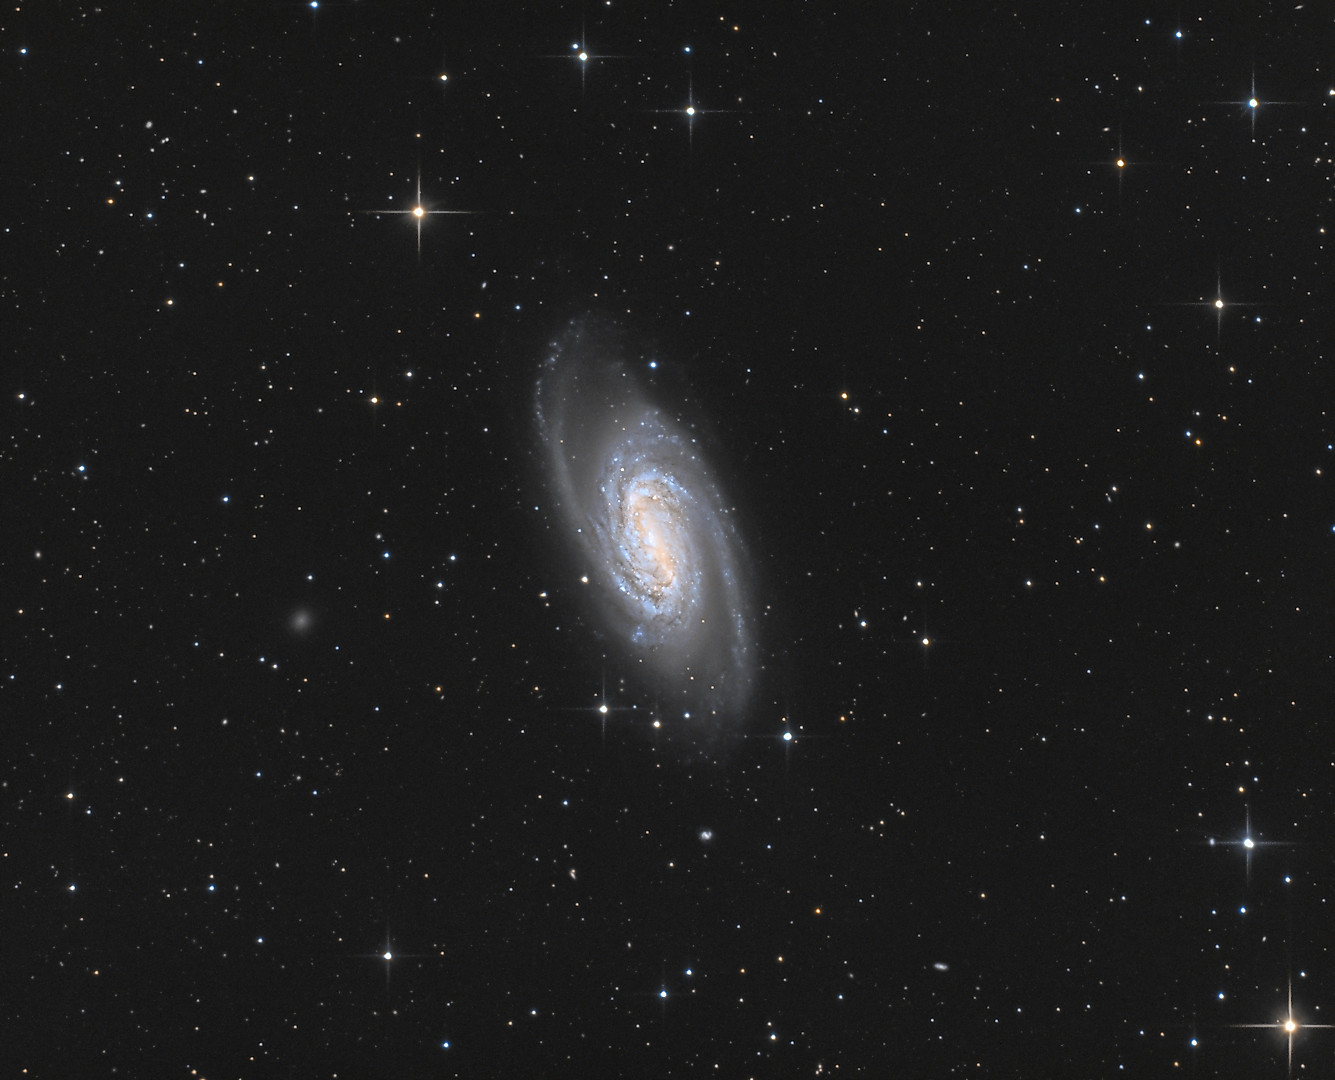 NGC2903 Picture-ac8a61c47c3b0ab4d8f26d8dcf3f87dc-fullhd-1335x1080